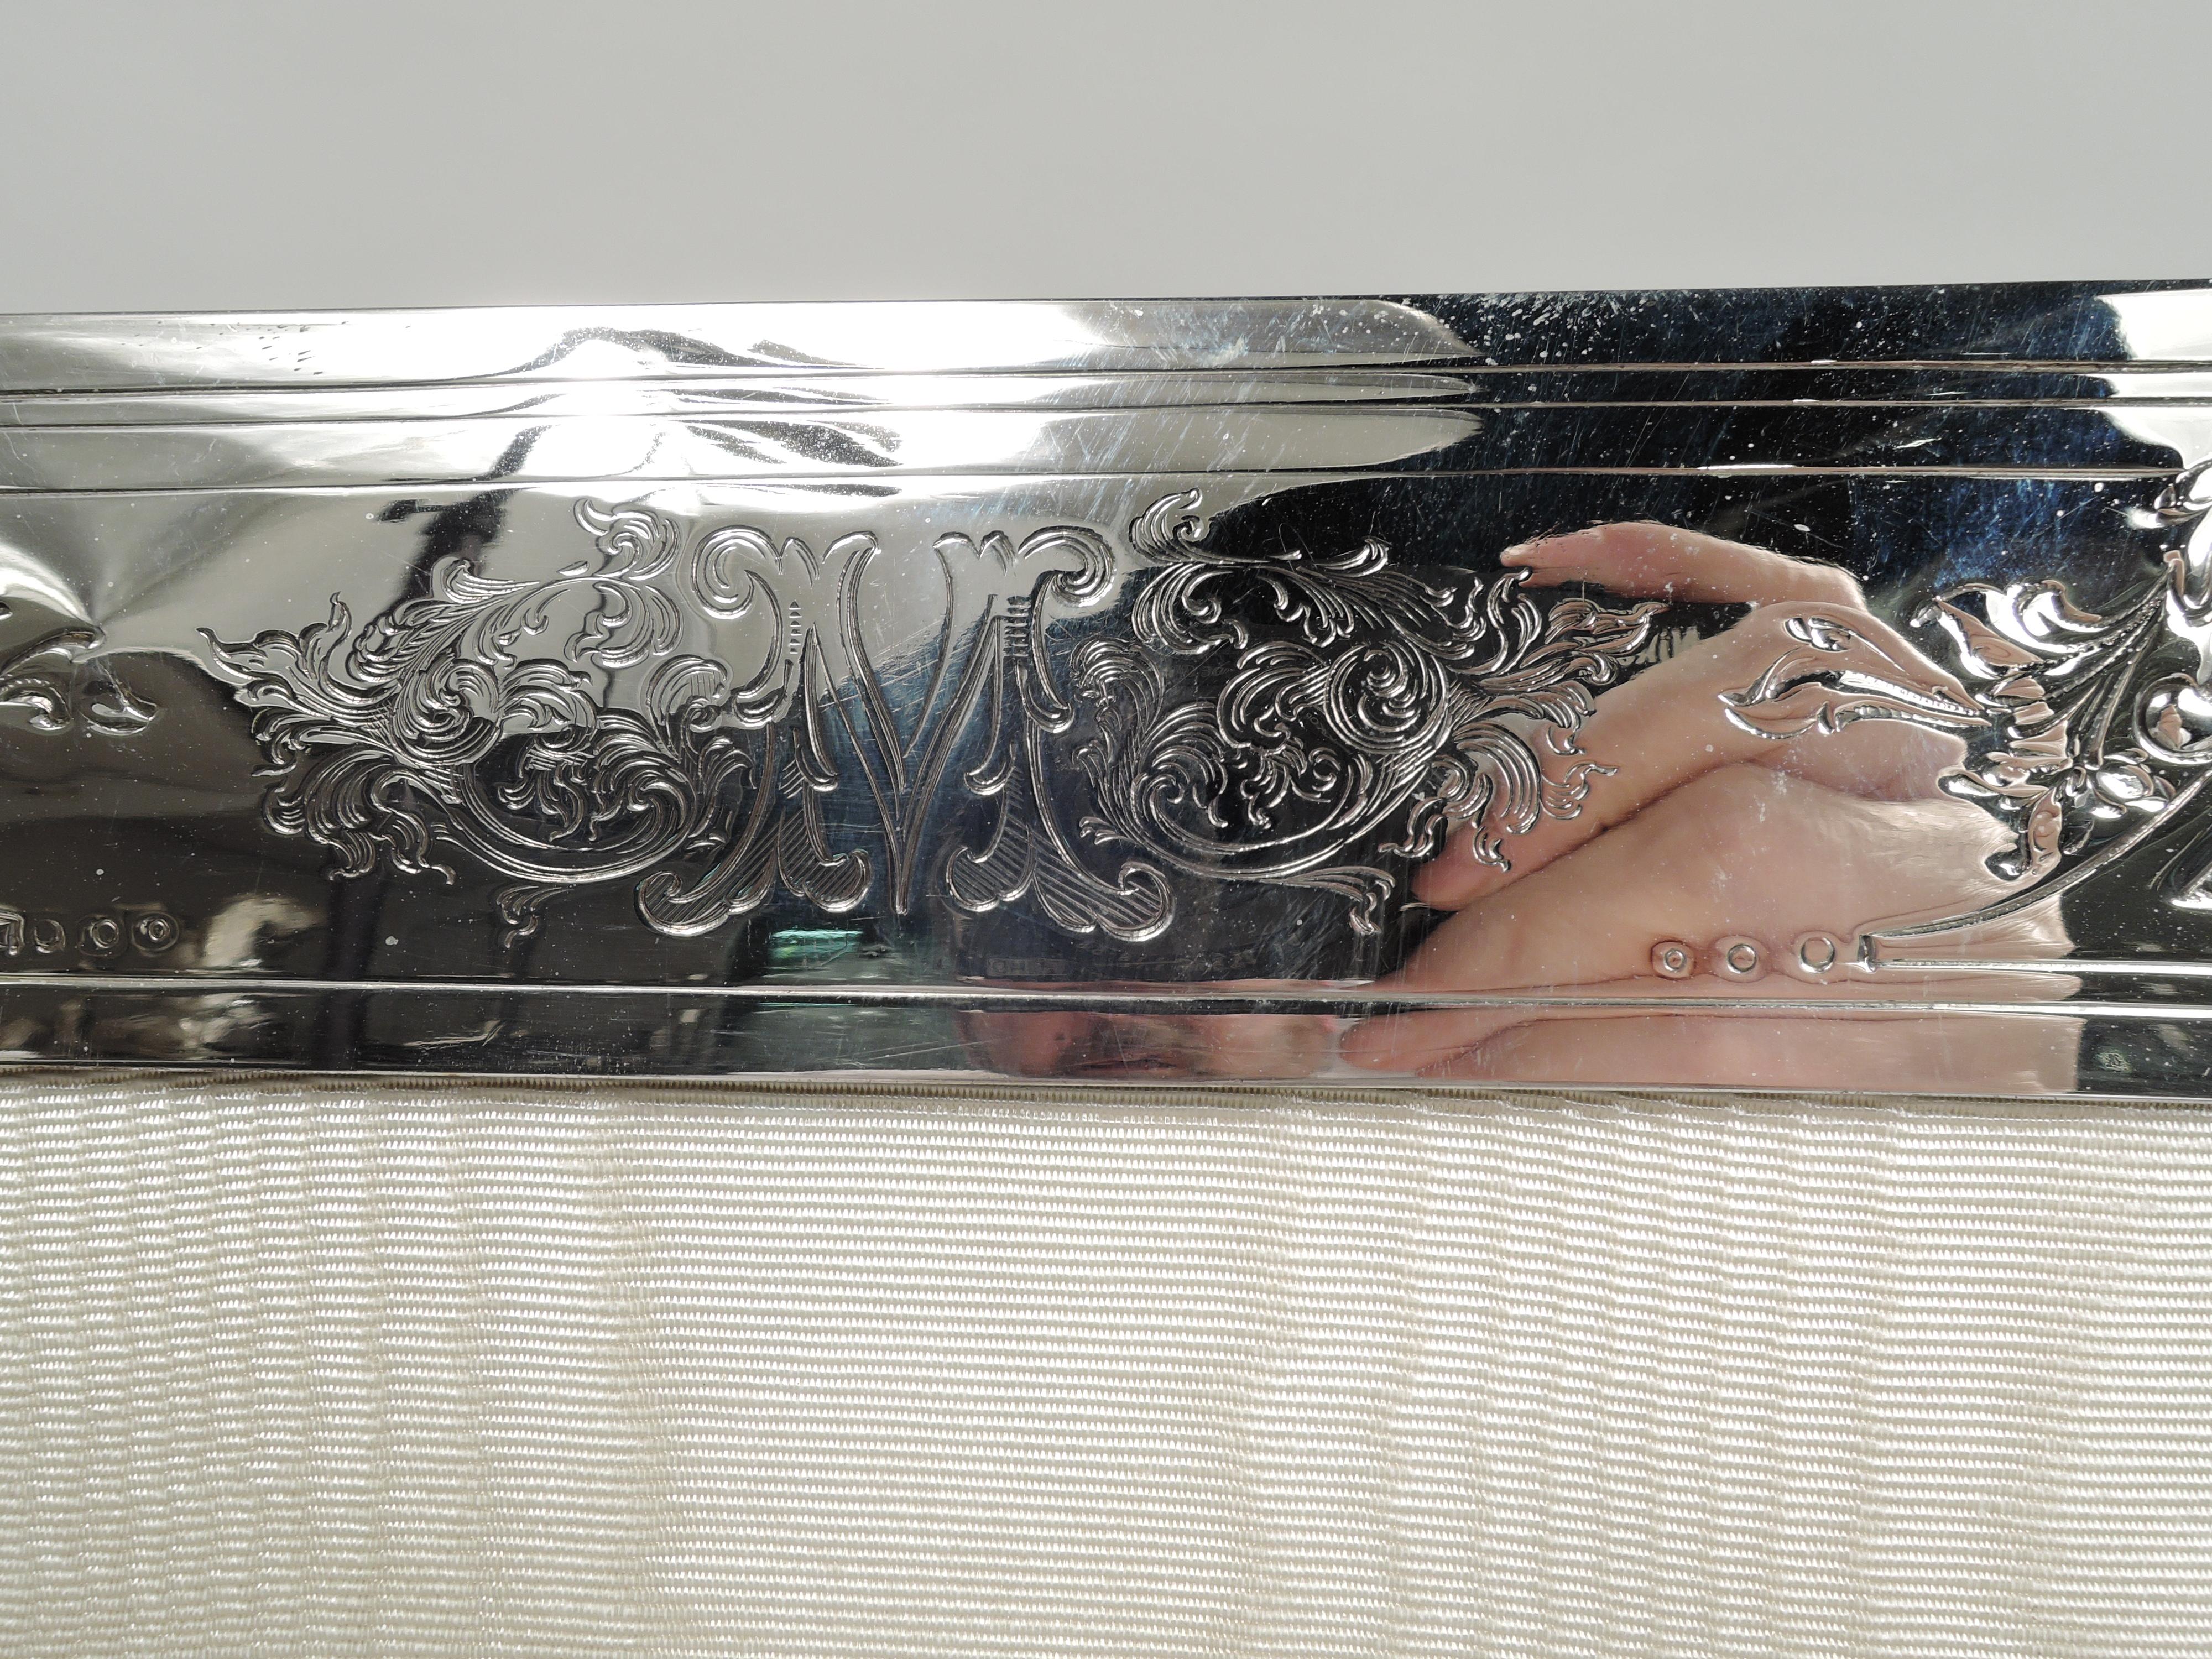 Großer Edwardian Art Nouveau Bilderrahmen aus Sterlingsilber. Hergestellt von Lebkuecher in Newark, ca. 1910. Rechteckiges Fenster in geschwungenem Rahmen. Die Eckrahmen sind mit Kränzen, Blättern und Rondellen mit Blütenköpfen besetzt und umrankt.